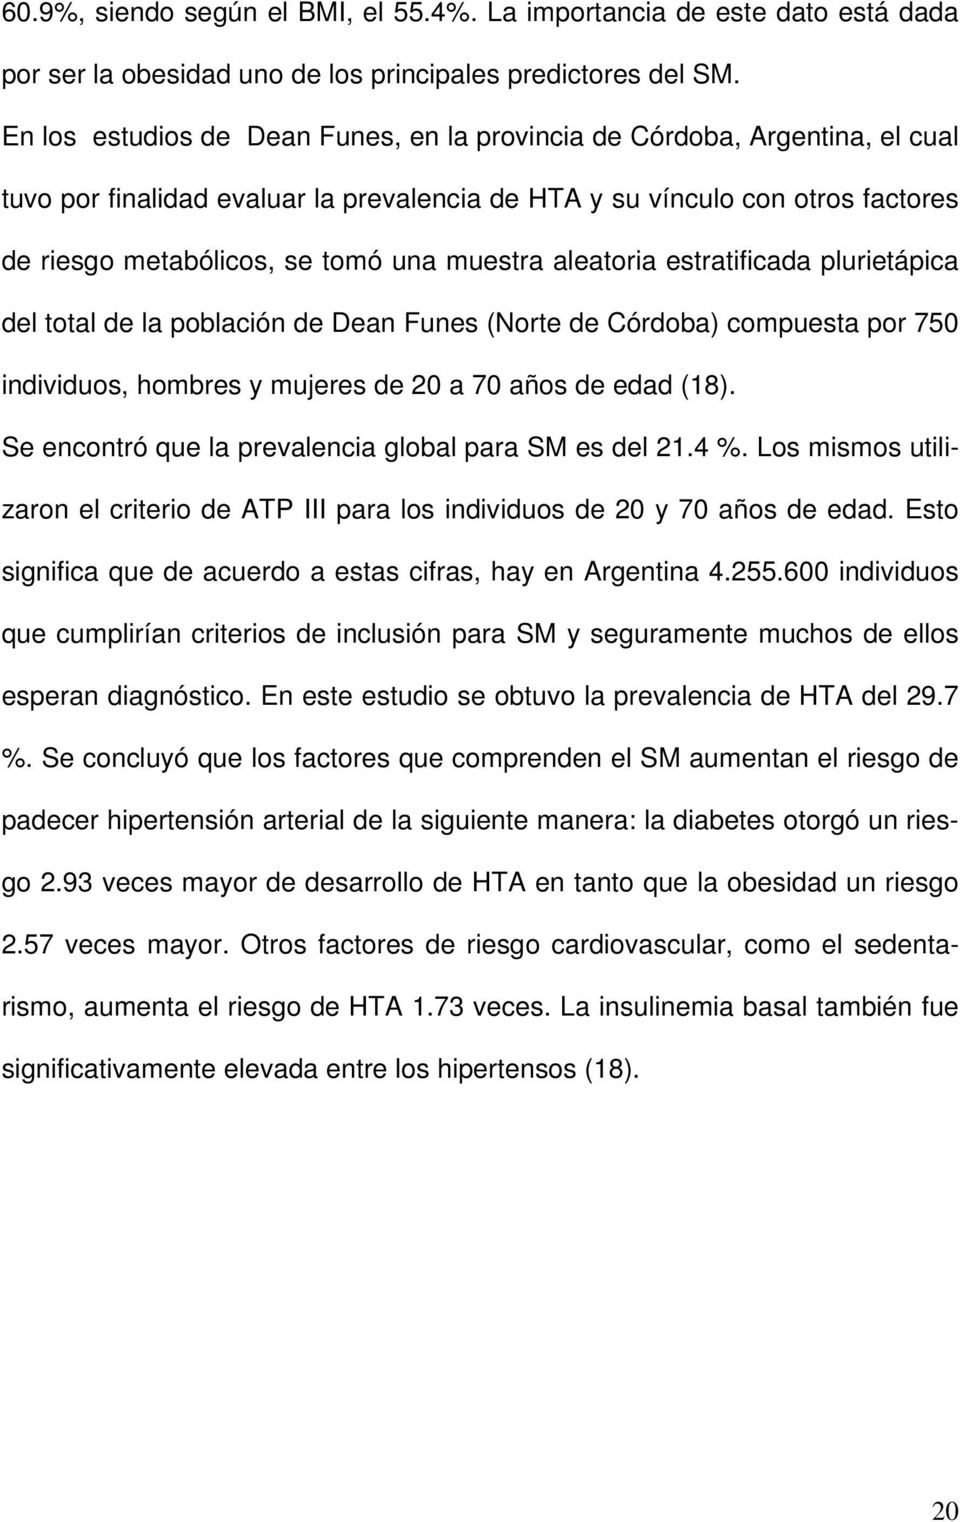 muestra aleatoria estratificada plurietápica del total de la población de Dean Funes (Norte de Córdoba) compuesta por 750 individuos, hombres y mujeres de 20 a 70 años de edad (18).